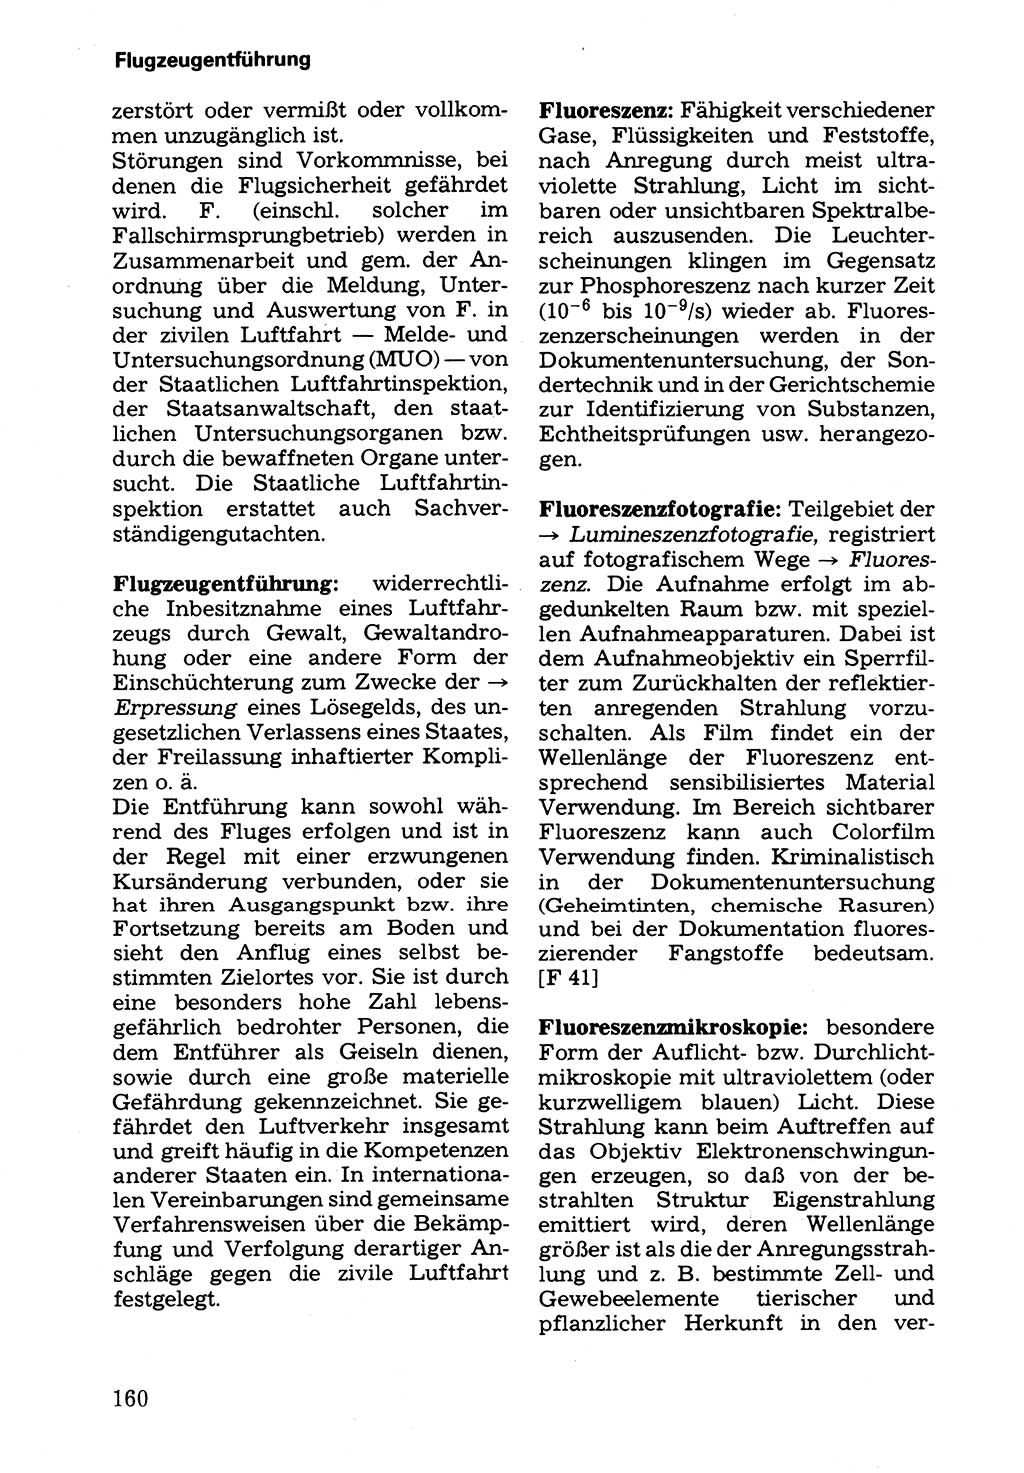 Wörterbuch der sozialistischen Kriminalistik [Deutsche Demokratische Republik (DDR)] 1981, Seite 160 (Wb. soz. Krim. DDR 1981, S. 160)